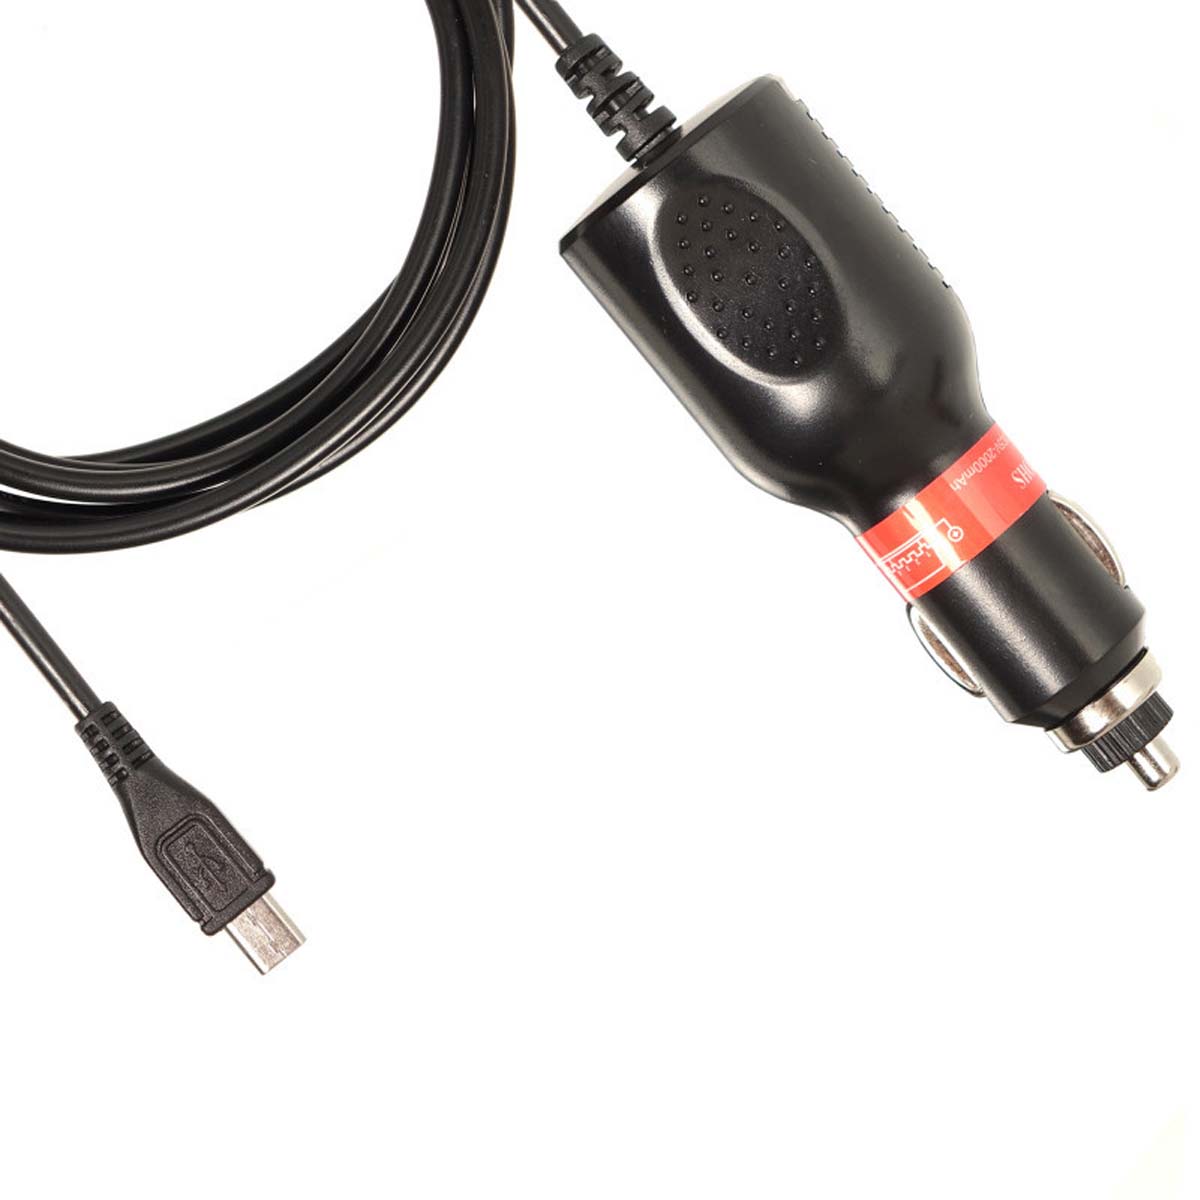 АЗУ (Автомобильное зарядное устройство) LP2 V8 с кабелем Micro USB, 2А, длина 1.5 метра, цвет черный